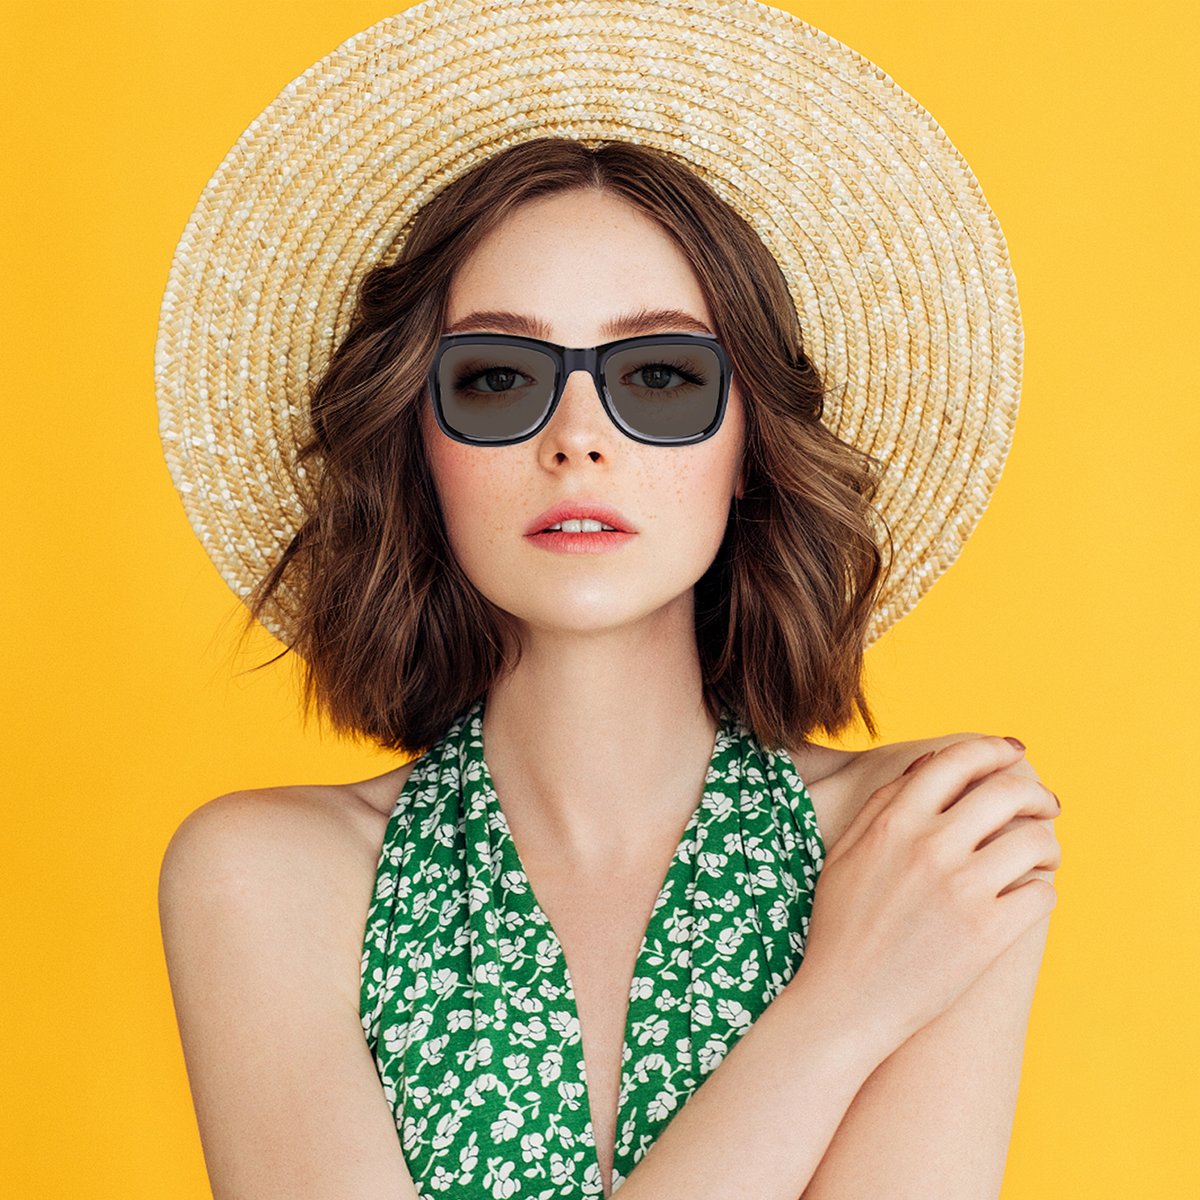 Wellermoz Smart Sunglasses - Fashion Accessories for Everyone
#wellermoz #smartglasses #sunglasses #sunglassesfashion #sunglasseslover #fashion